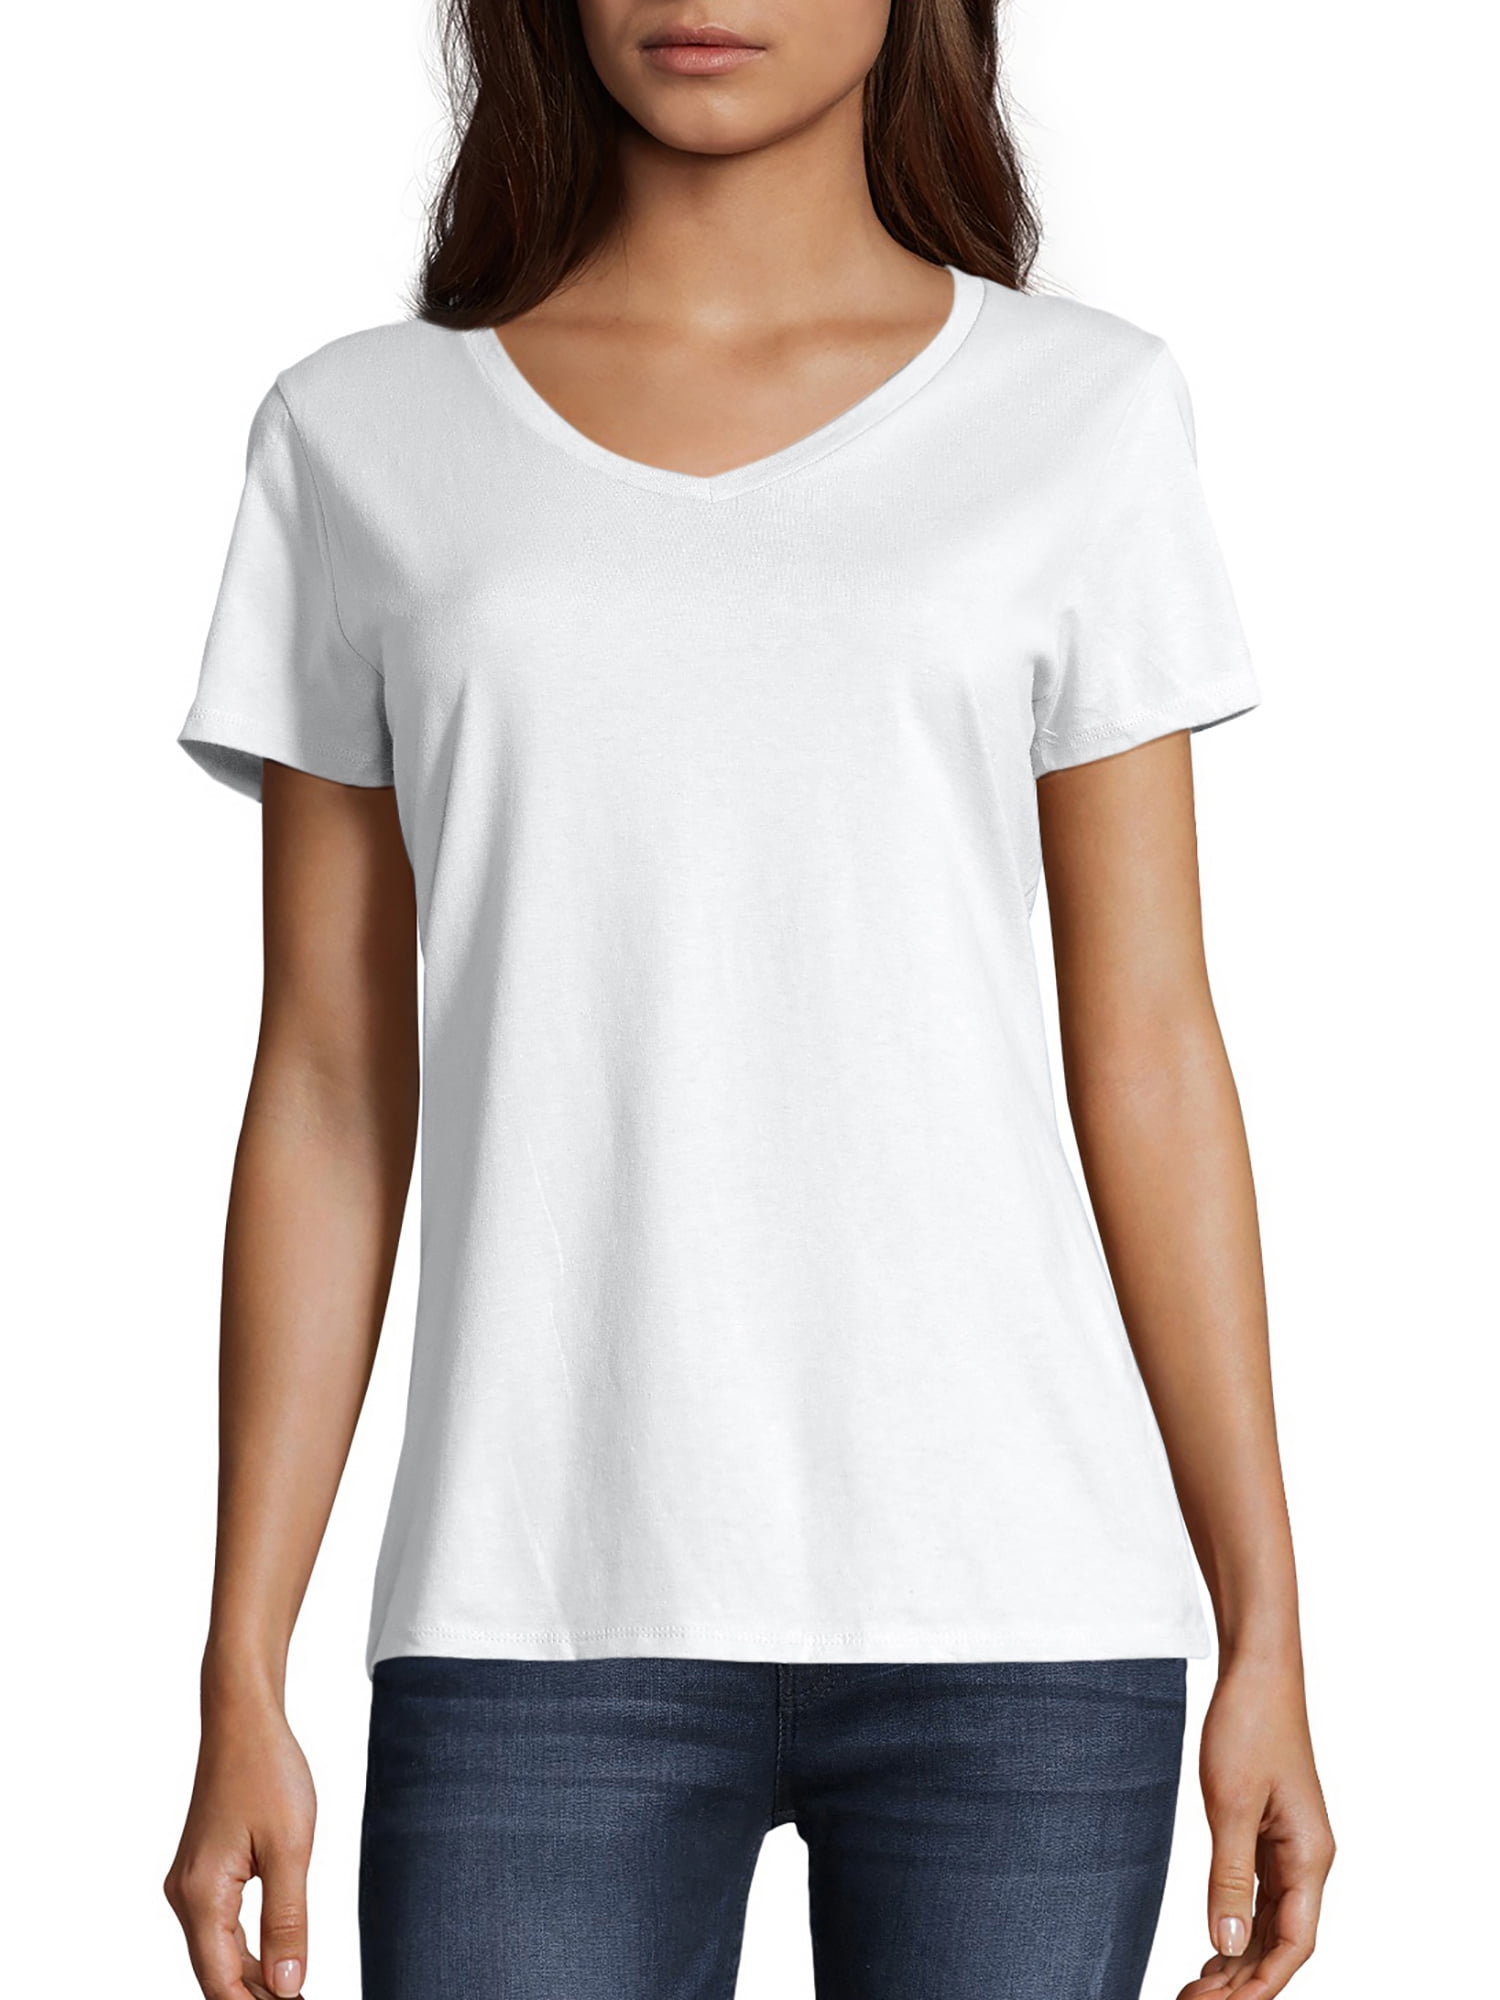 Hanes Women's Nano-T V-Neck T-Shirt White SIZE L --x5-- 691167008123 | eBay